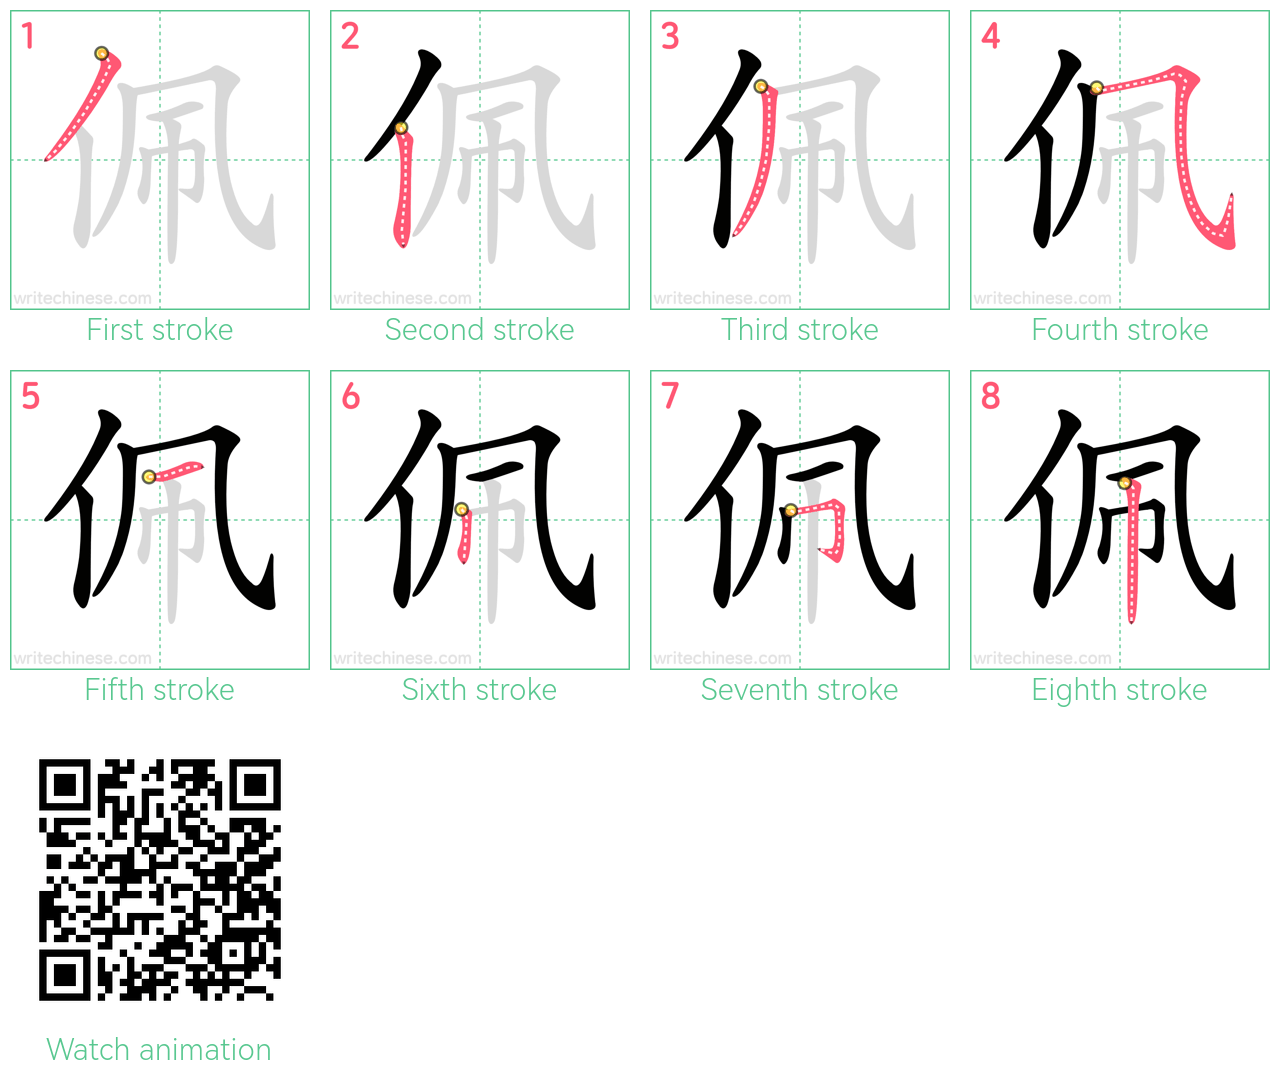 佩 step-by-step stroke order diagrams